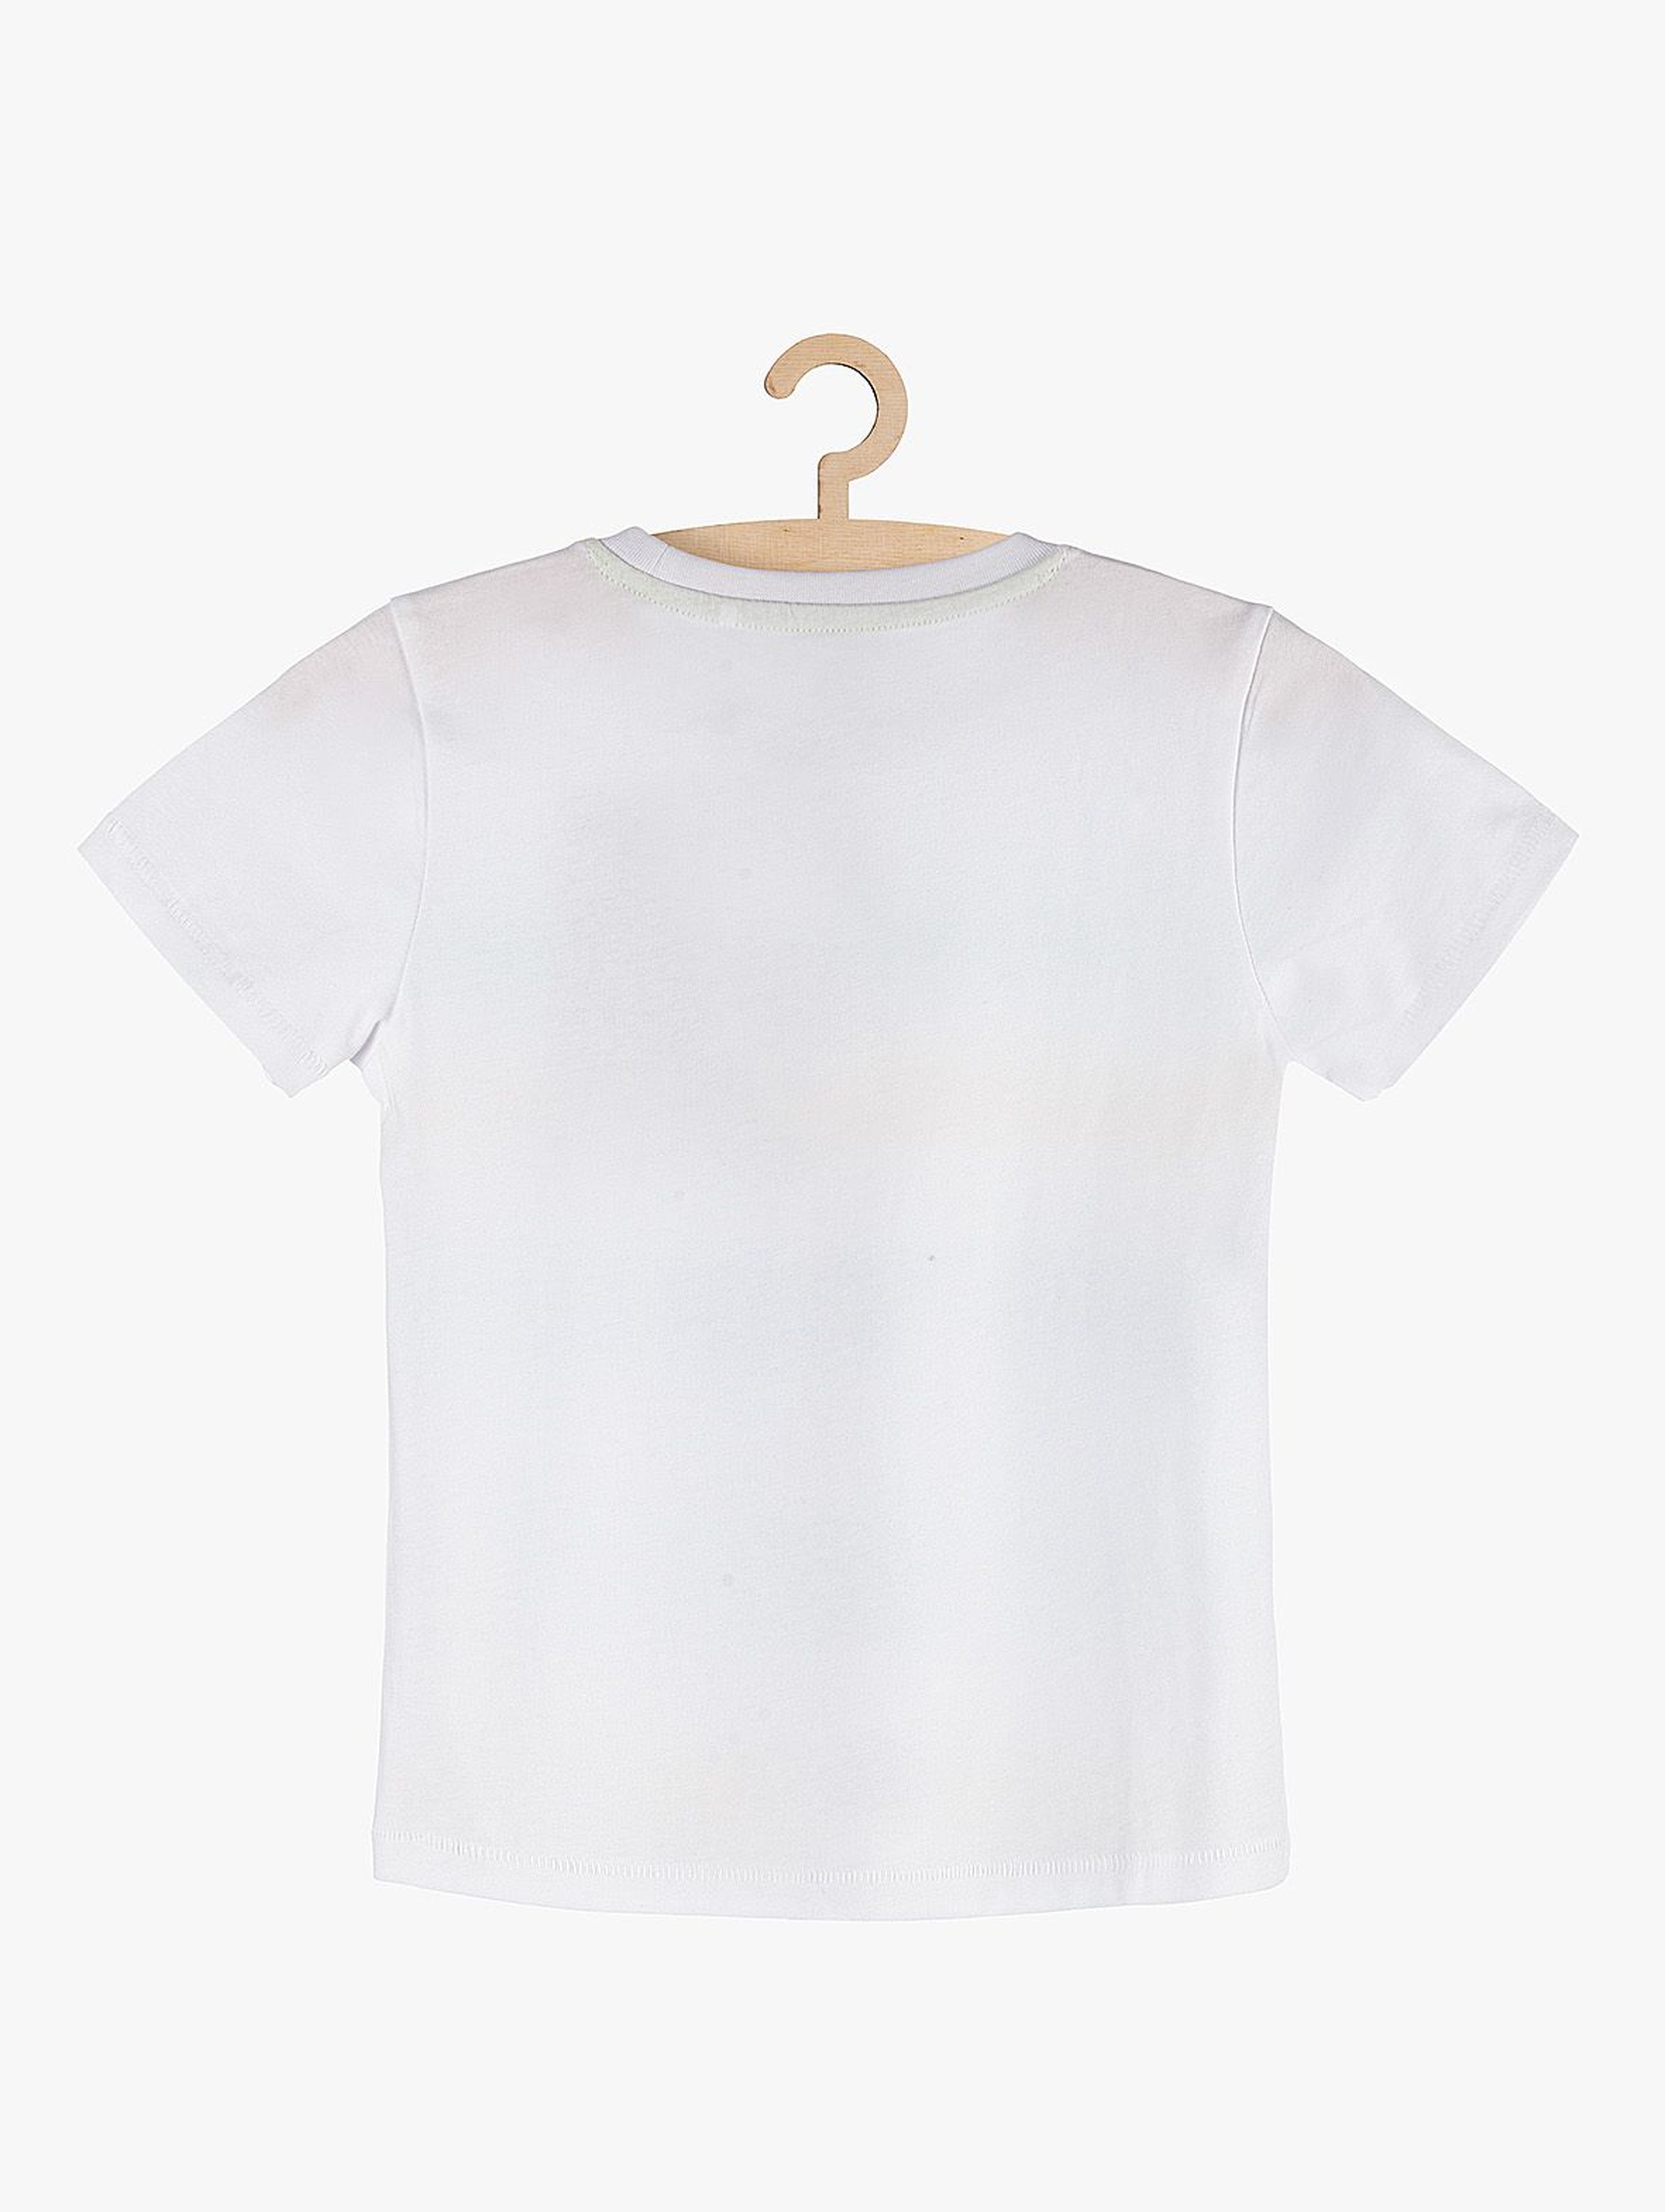 T-shirt chłopięcy biały w kolorowe paski- 100% bawełna